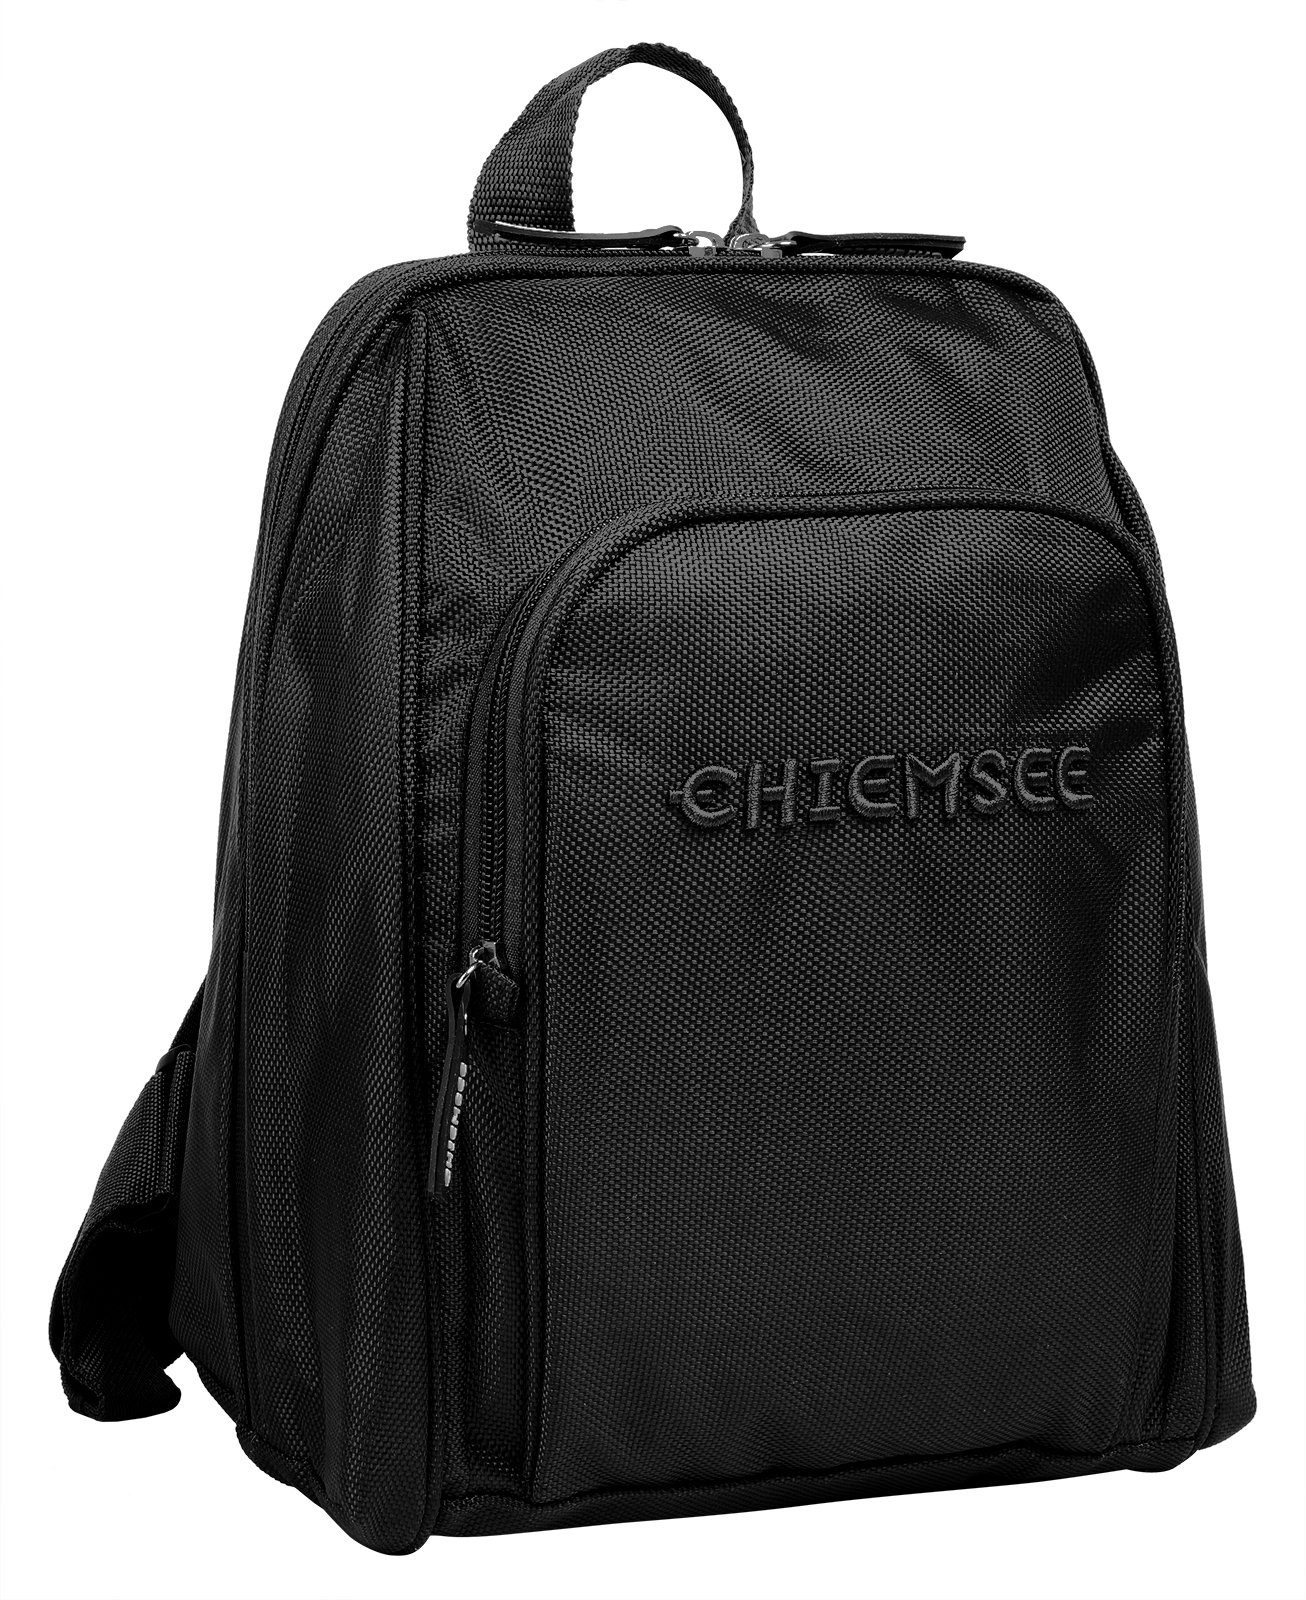 Chiemsee Cityrucksack schwarz